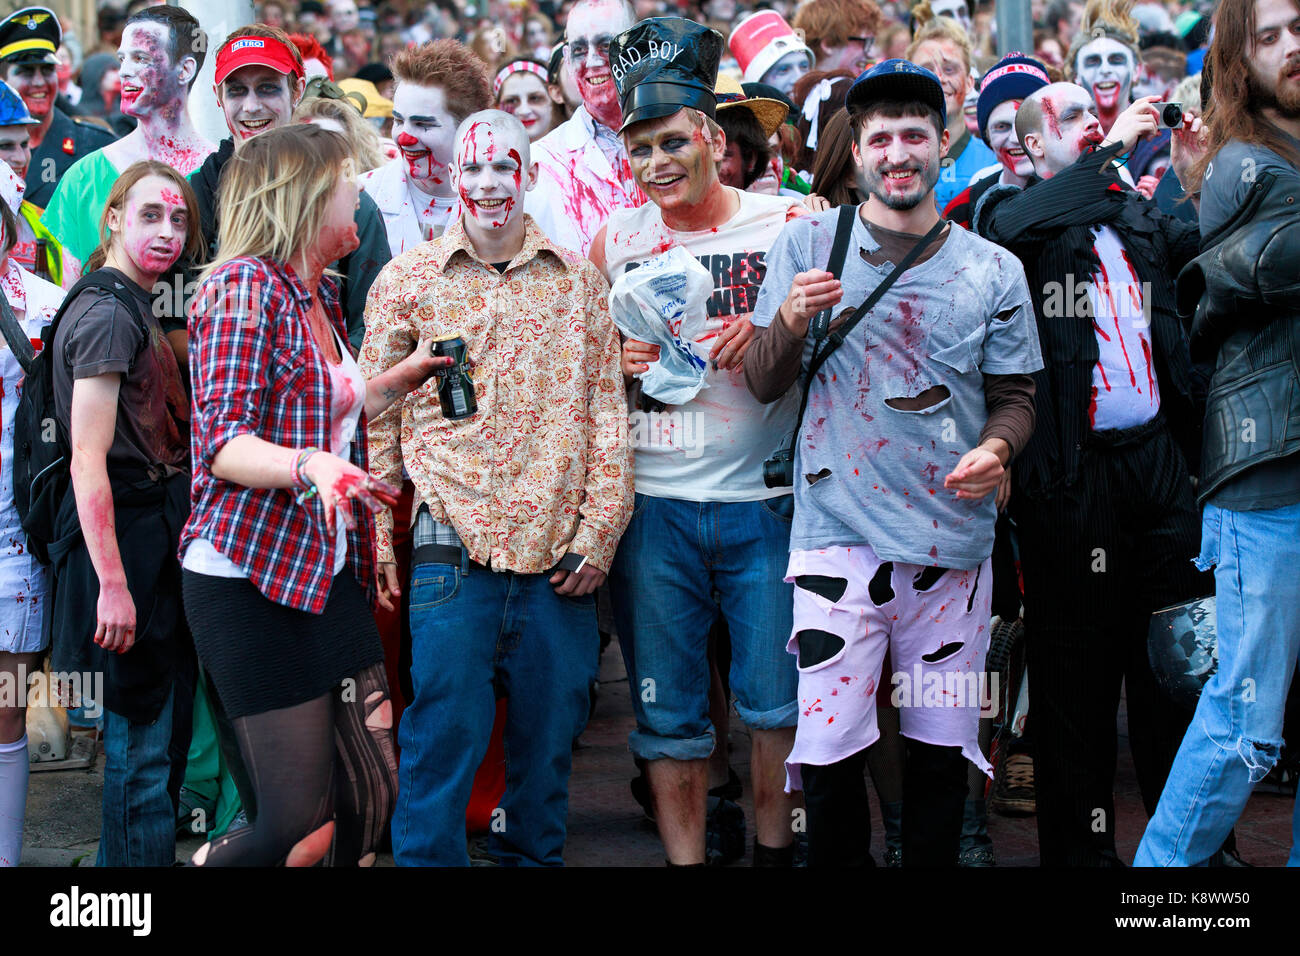 Eine Gruppe von lächelnden, glücklichen Menschen verkleidet als Zombies für die jährliche Bristol Zombie jedes Jahr im Oktober in der Nähe von Halloween statt zu Fuß Stockfoto